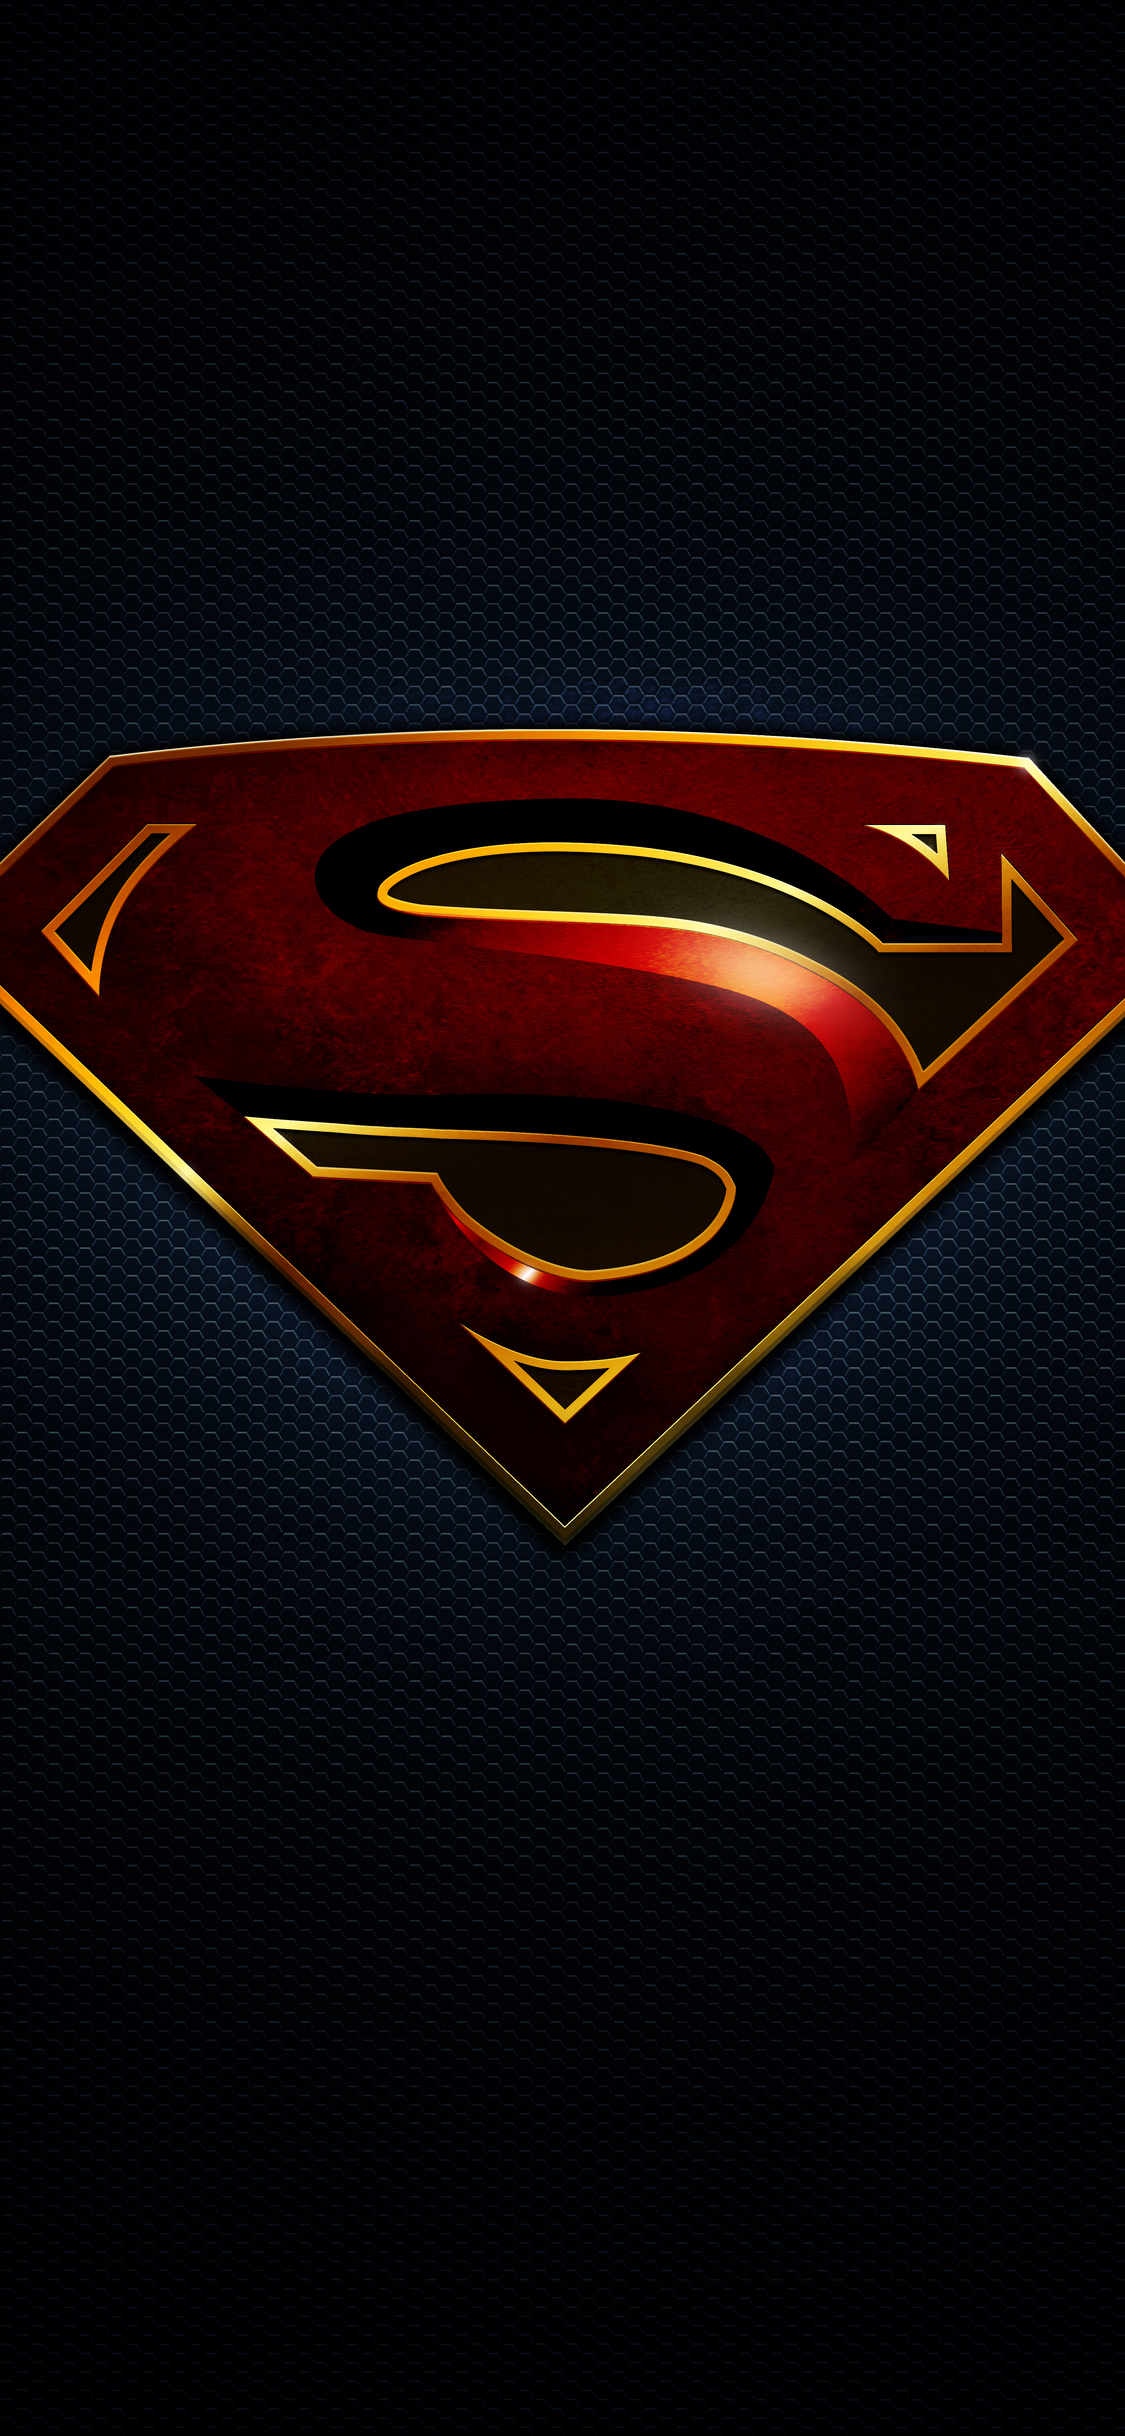 슈퍼맨 바탕 화면,슈퍼맨,슈퍼 히어로,소설 속의 인물,사법 리그,상징